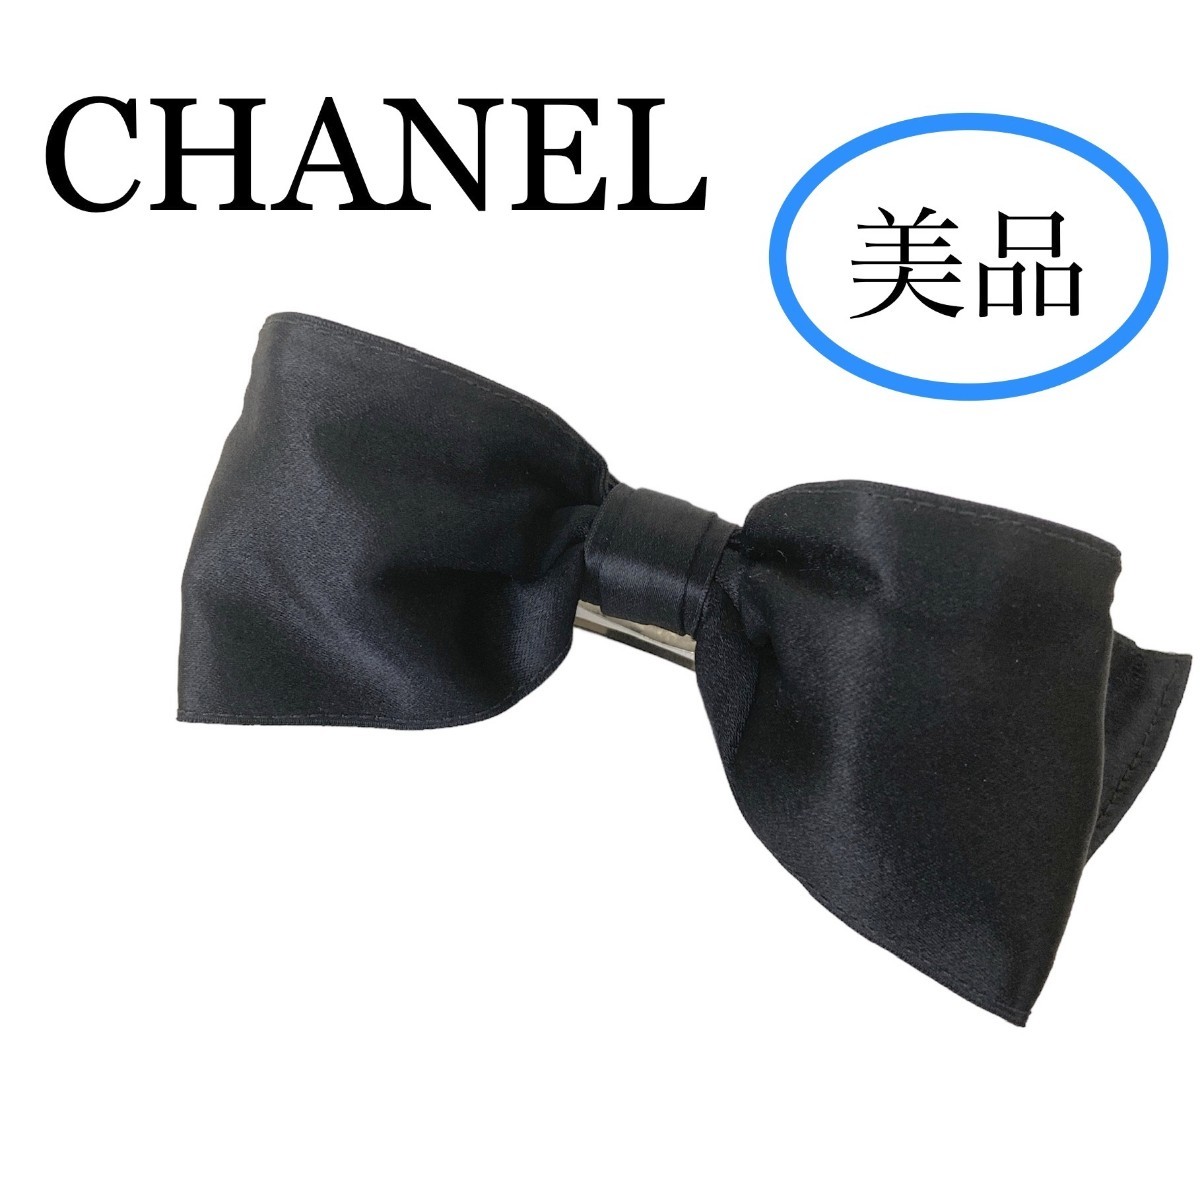  прекрасный товар редкость CHANEL лента заколка шелк атлас черный проволока ввод одноцветный аксессуары для волос чёрный серебряный Chanel редкий женский 